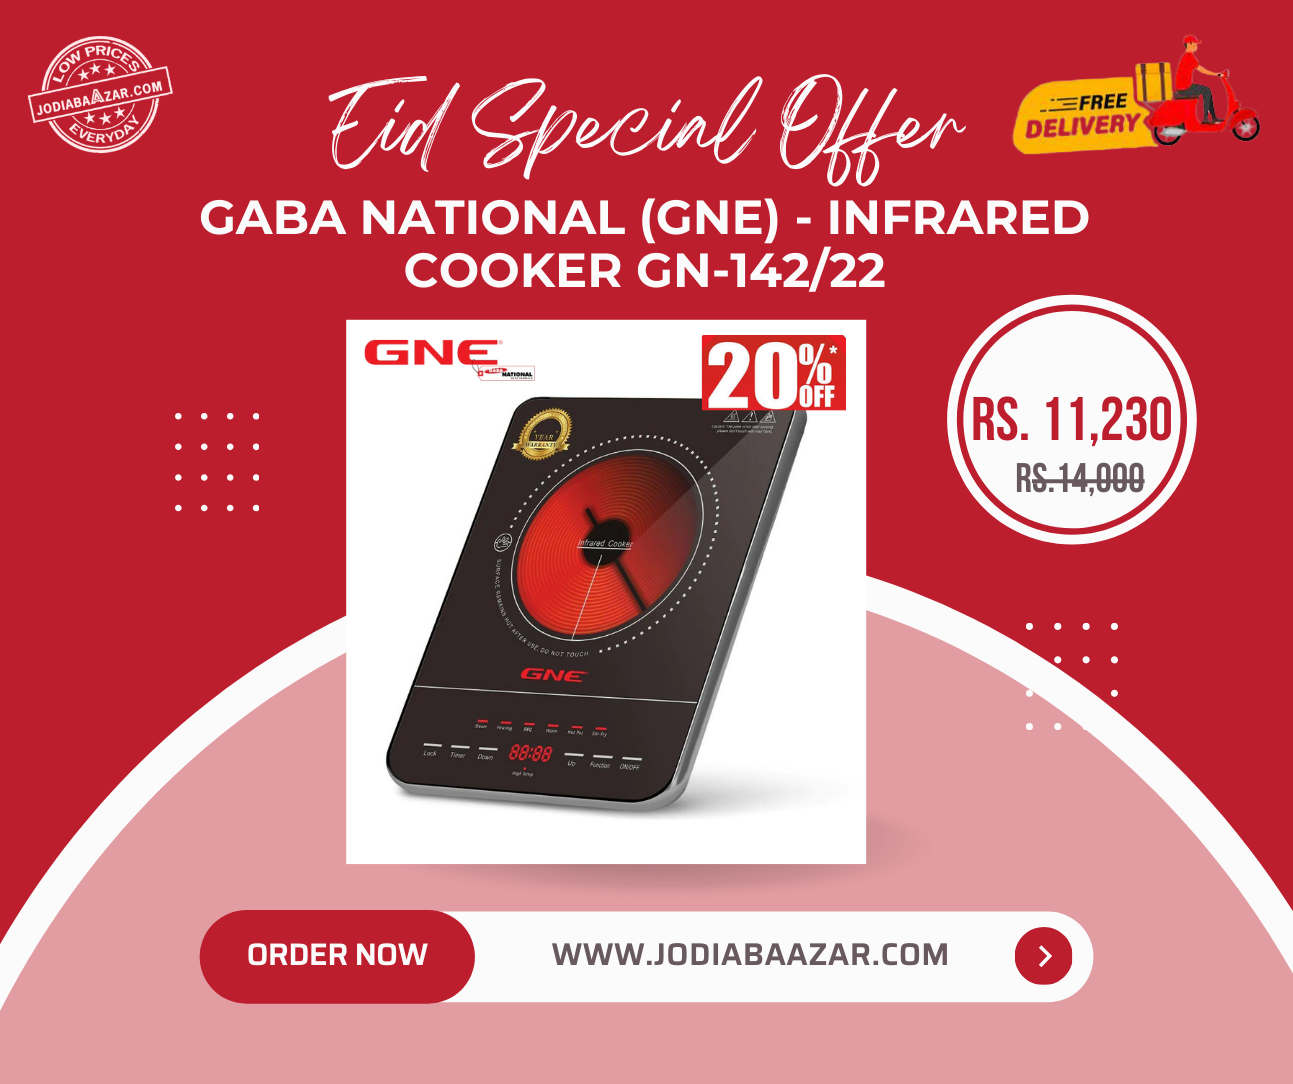 Eid Special Offer - Gaba National (GNE) - Digital Infrared Cooker - GN-142/22